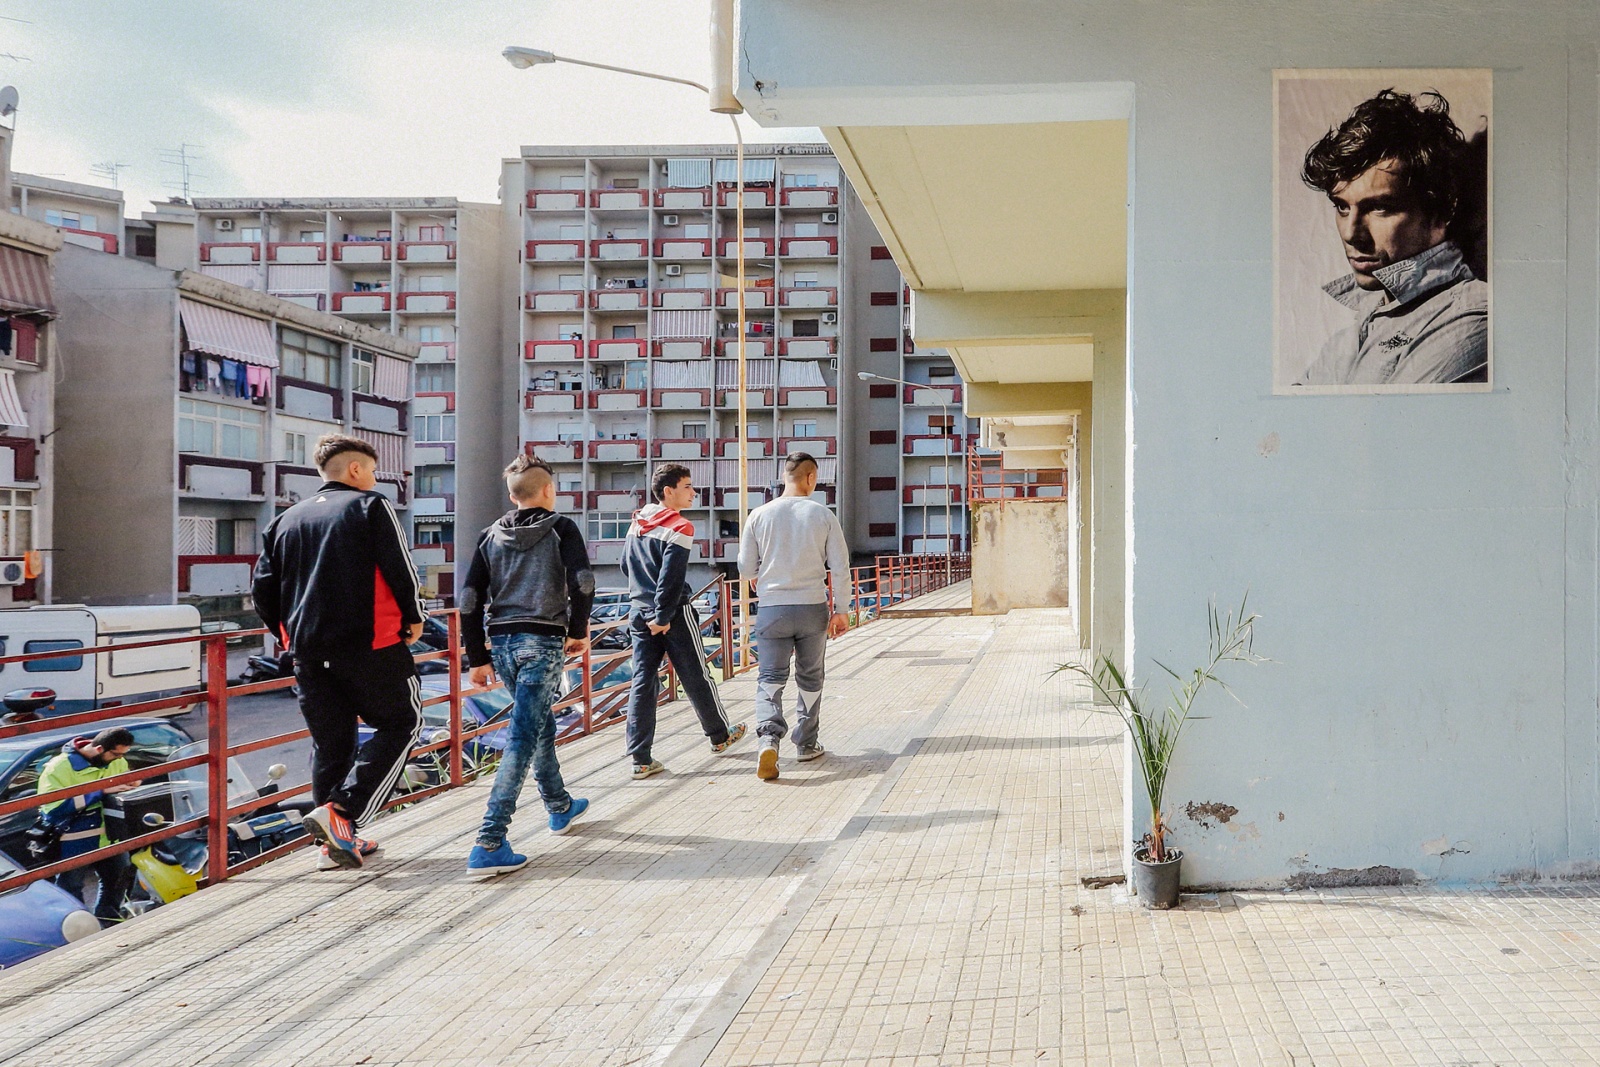 Ragazzi che passeggiano nel quartiere Librino, Catania, 2015 – 2016. © Riccardo Colelli.